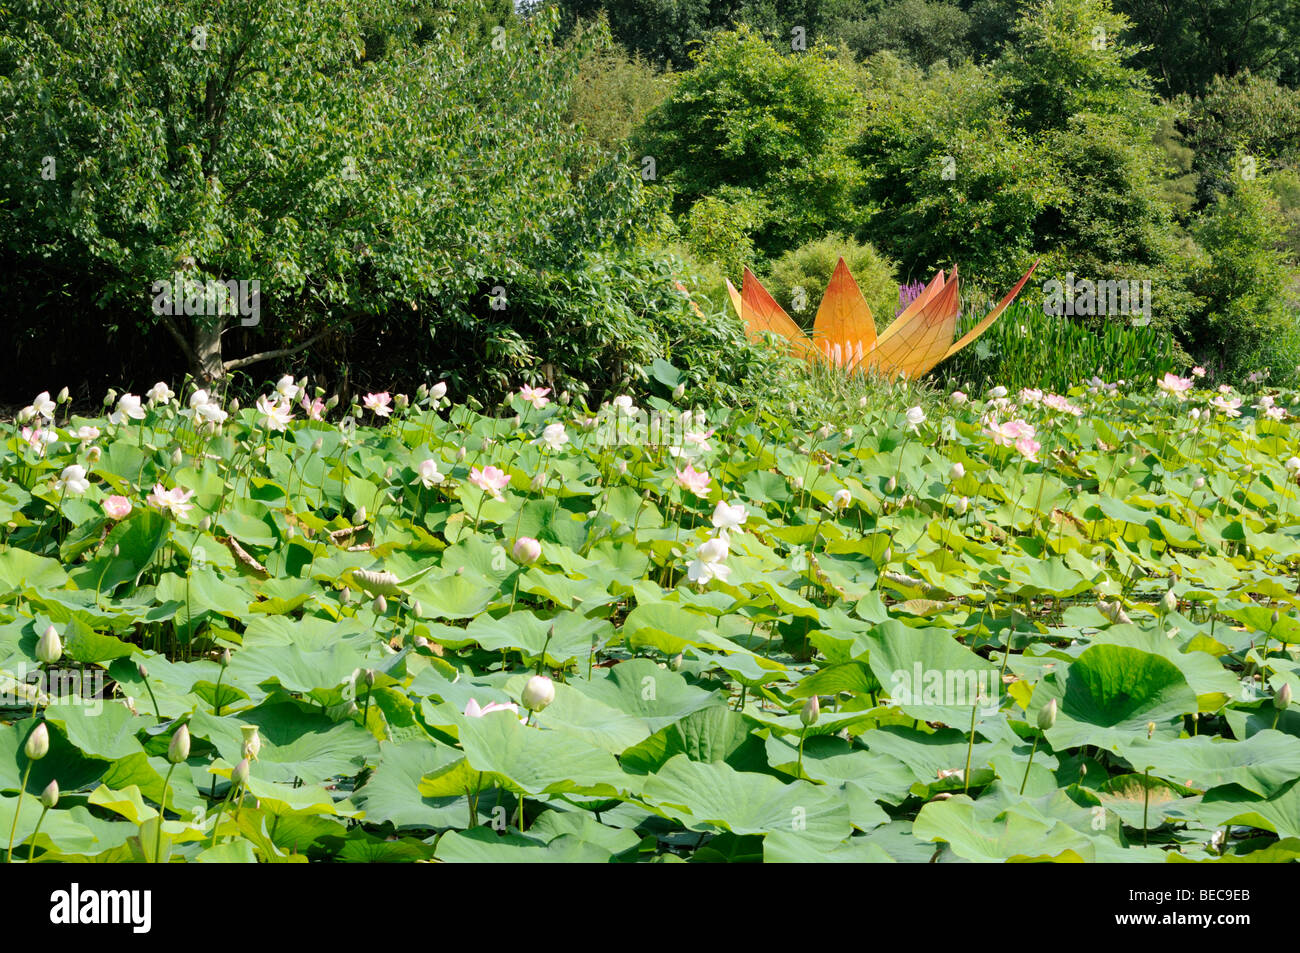 Lotosblume, Arboretum, Ellerhoop, Deutschland. - Lotus flower, Arboretum, Ellerhoop, Germany. Stock Photo